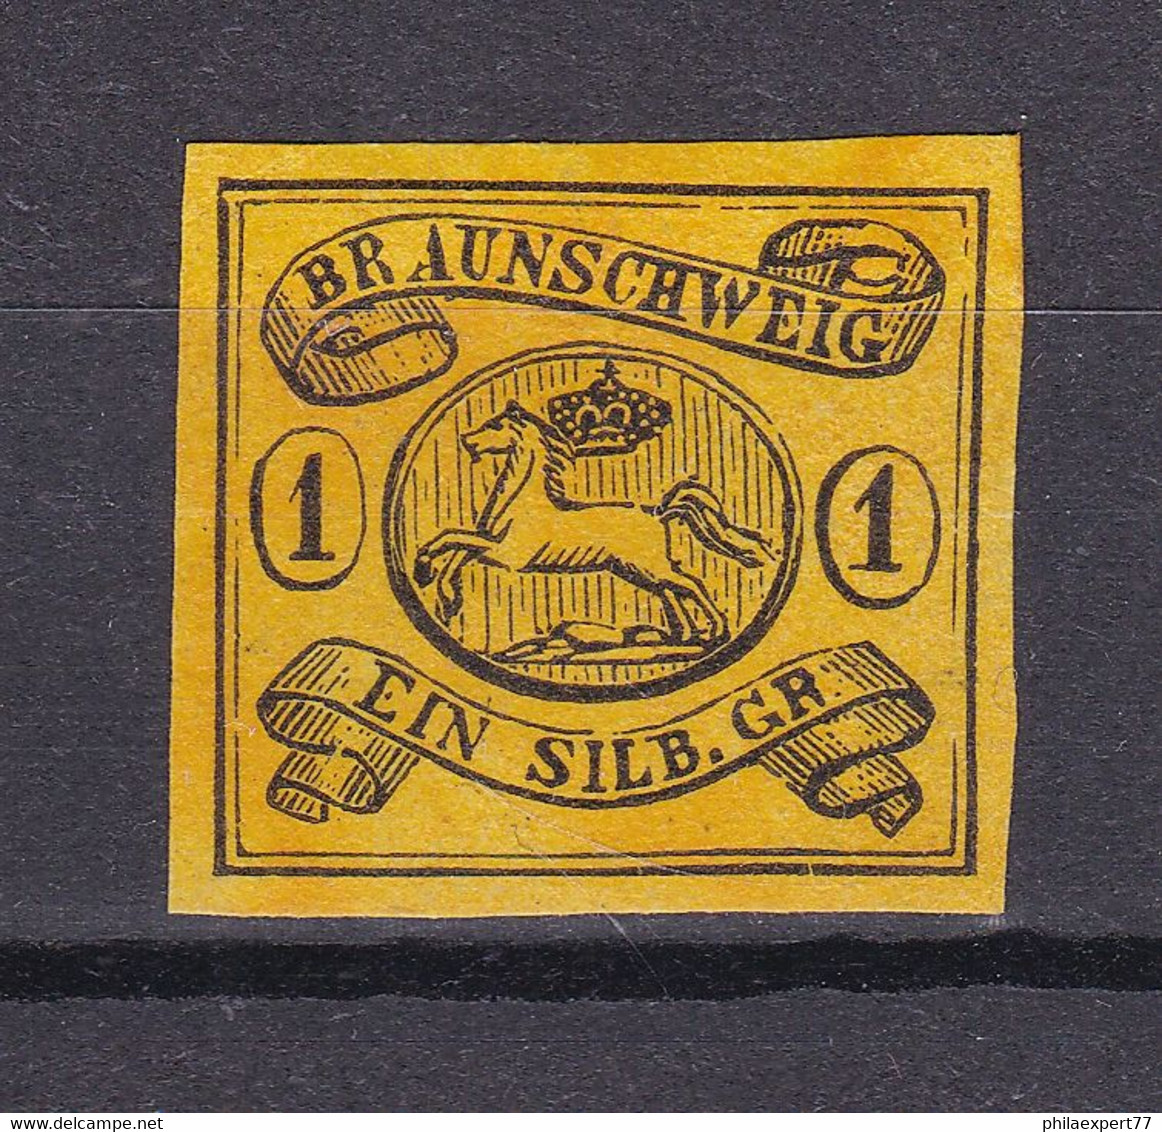 Braunschweig - 1853 - Michel Nr. 6 ND - Ungebr. - Brunswick